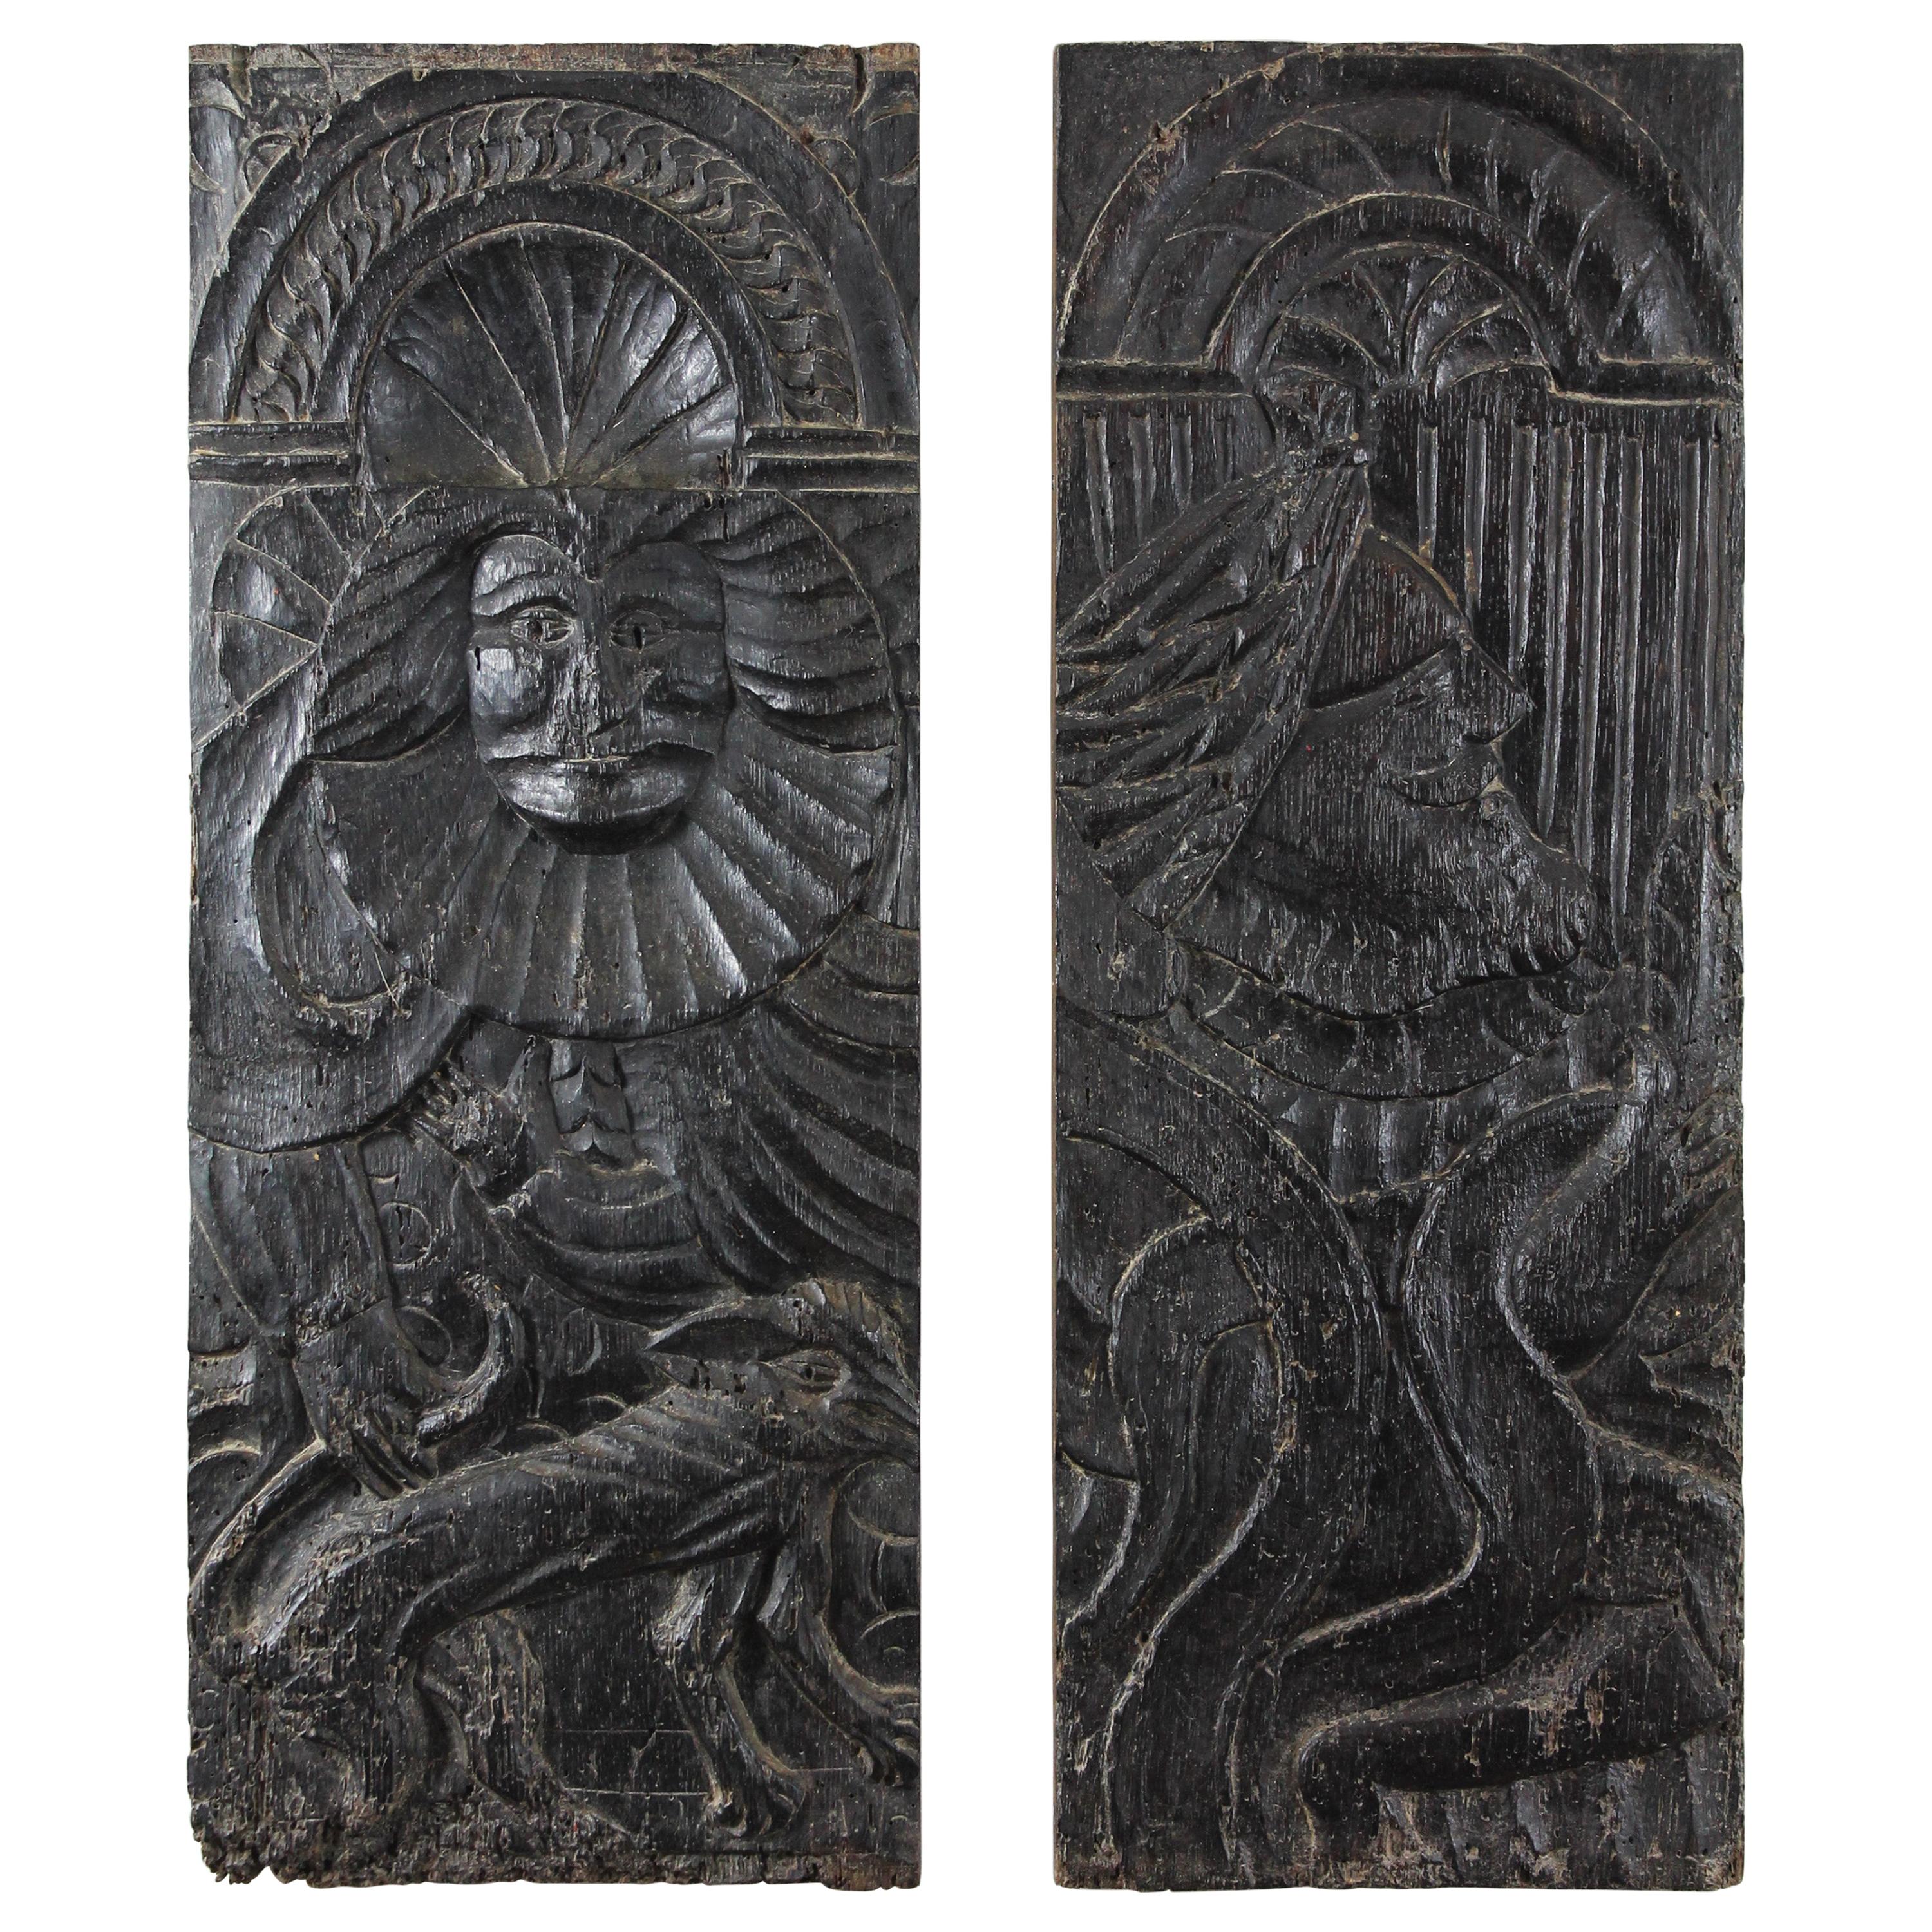 Panneaux en chêne sculptés à la main de la période de la Renaissance, 16e siècle